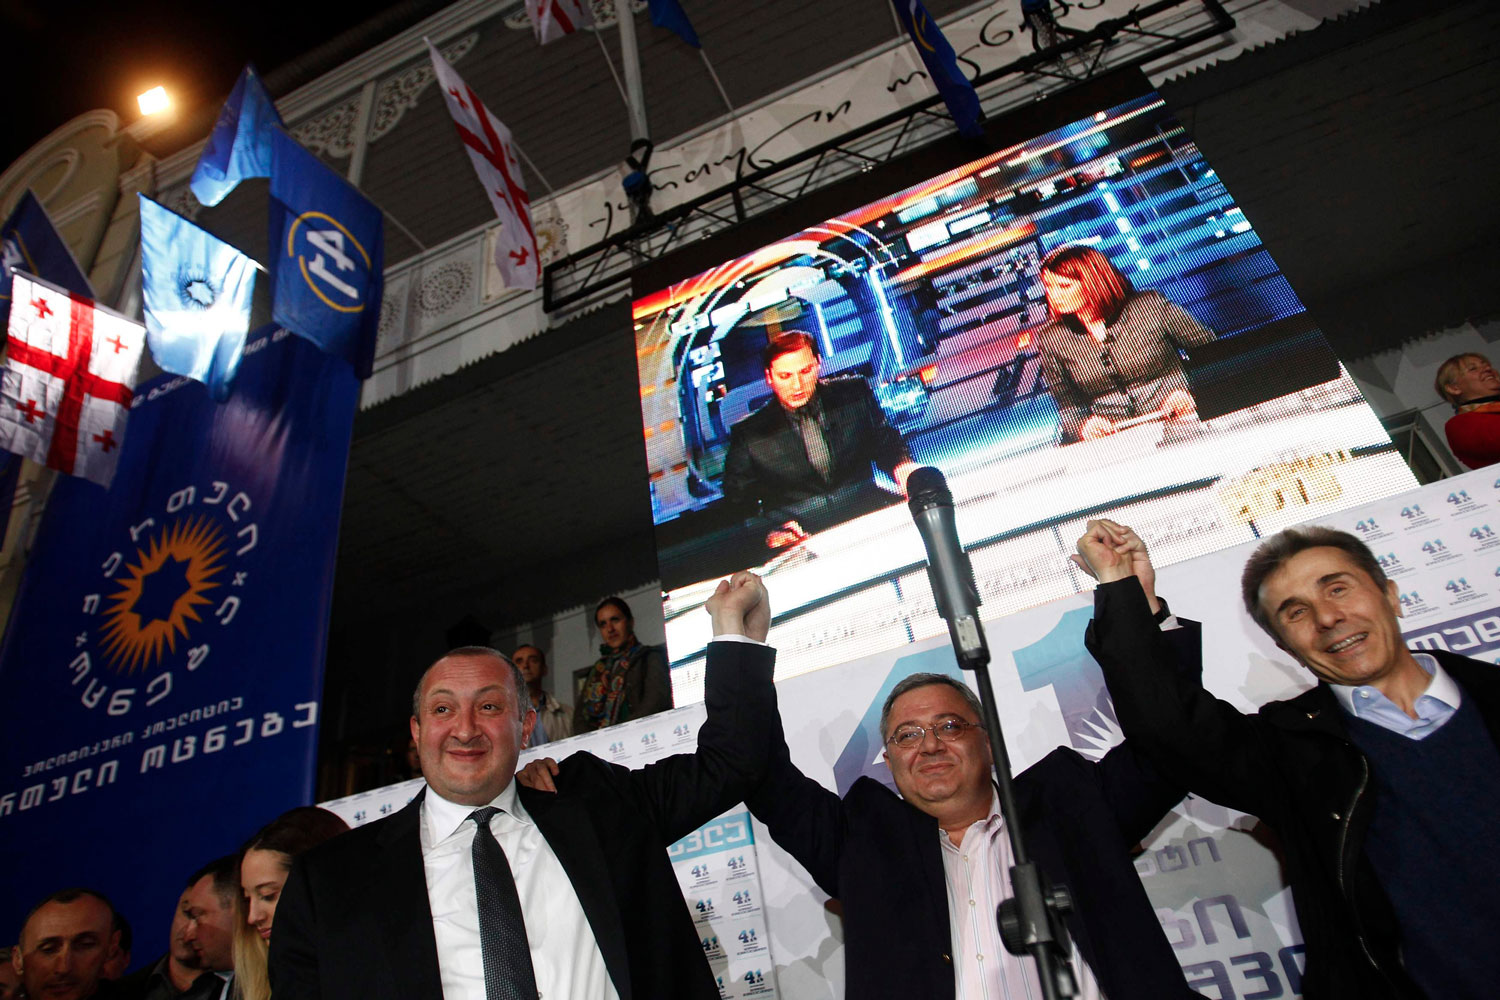 El candidato oficialista Giorgi Margvelashvili gana las elecciones presidenciales en Georgia